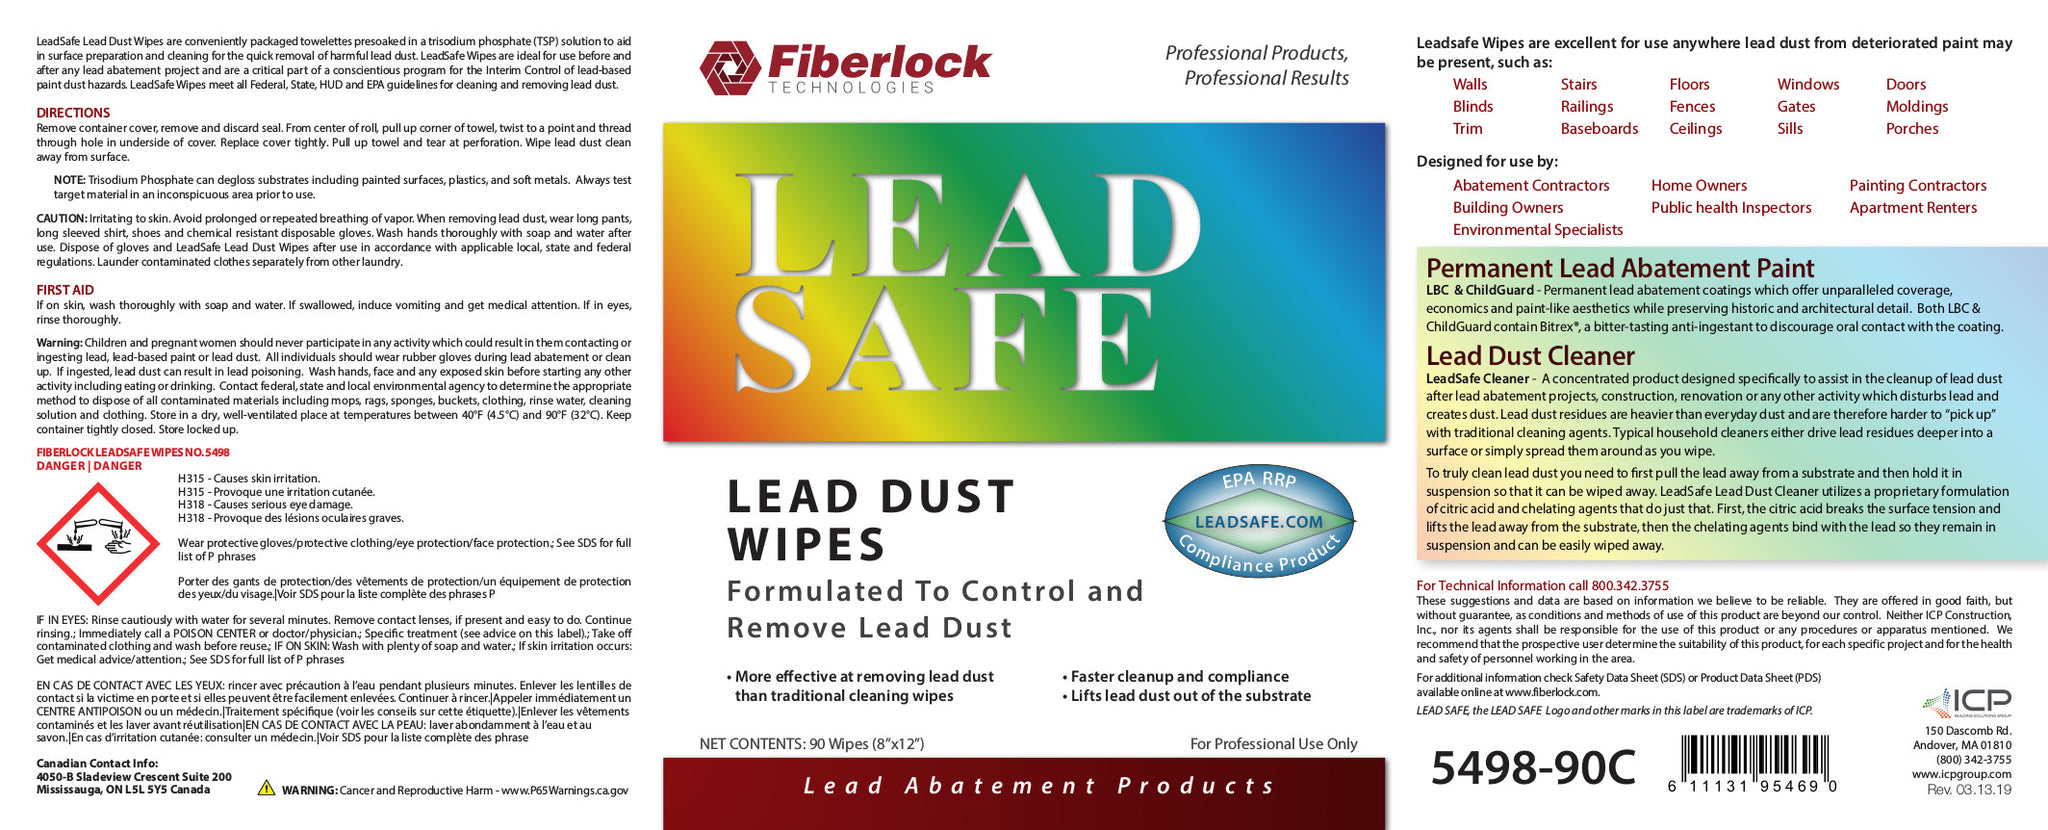 Fiberlock TSP LeadSafe Lead Wipes